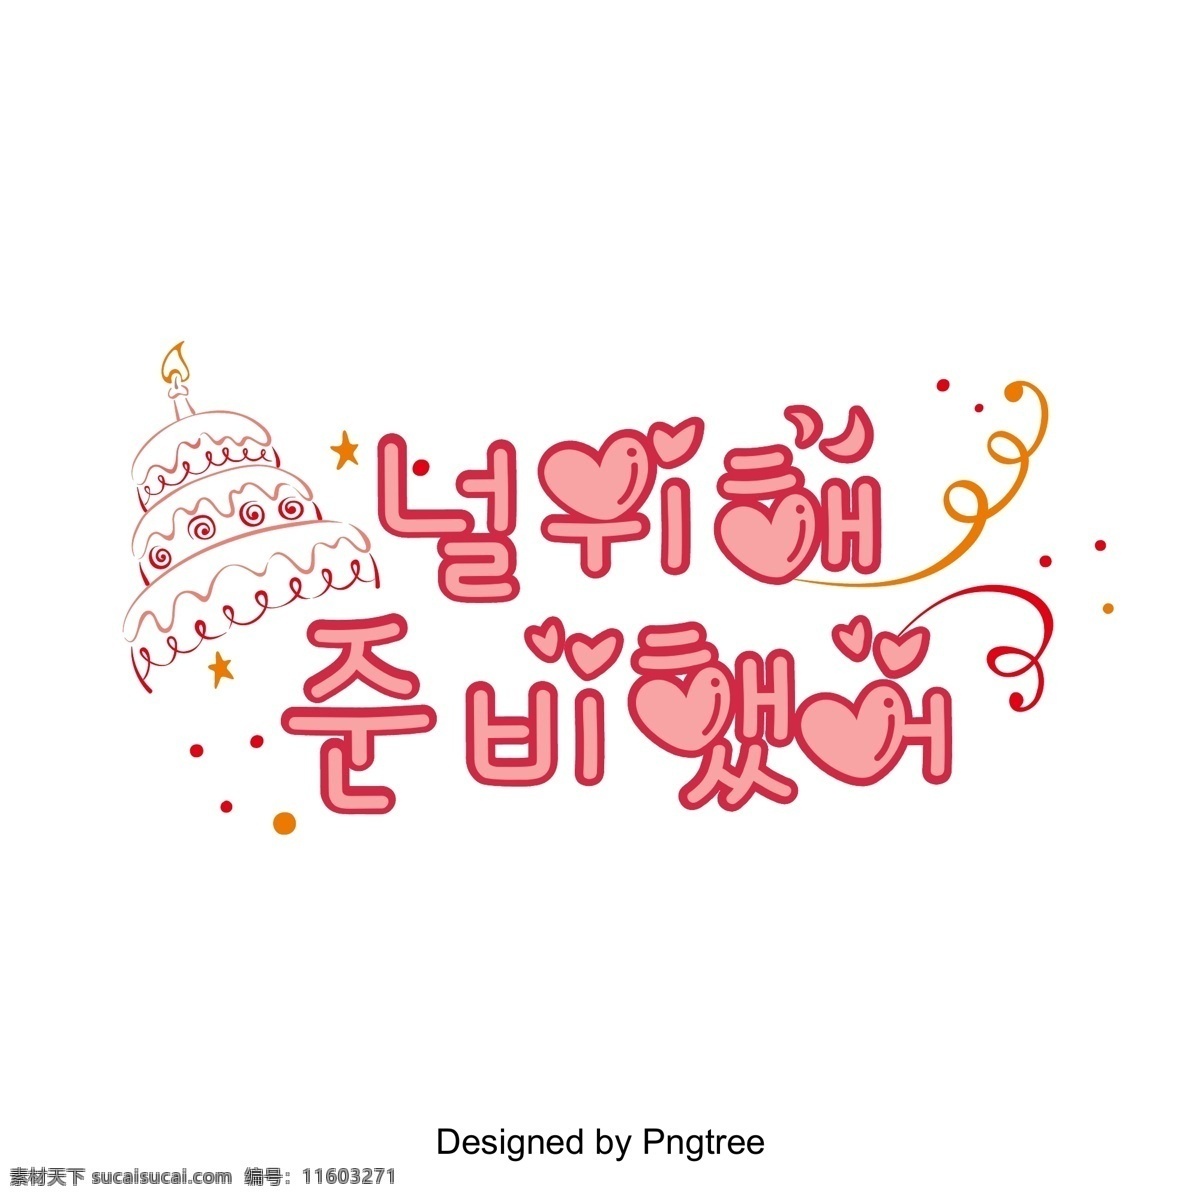 这是 美丽 颜色 丝带 粉红色 生日蛋糕 字体 韩国 场景 矢量 这个给你 粉 心脏形 字形 可爱 彩带 生日 芝士蛋糕 向量 韩文 现场